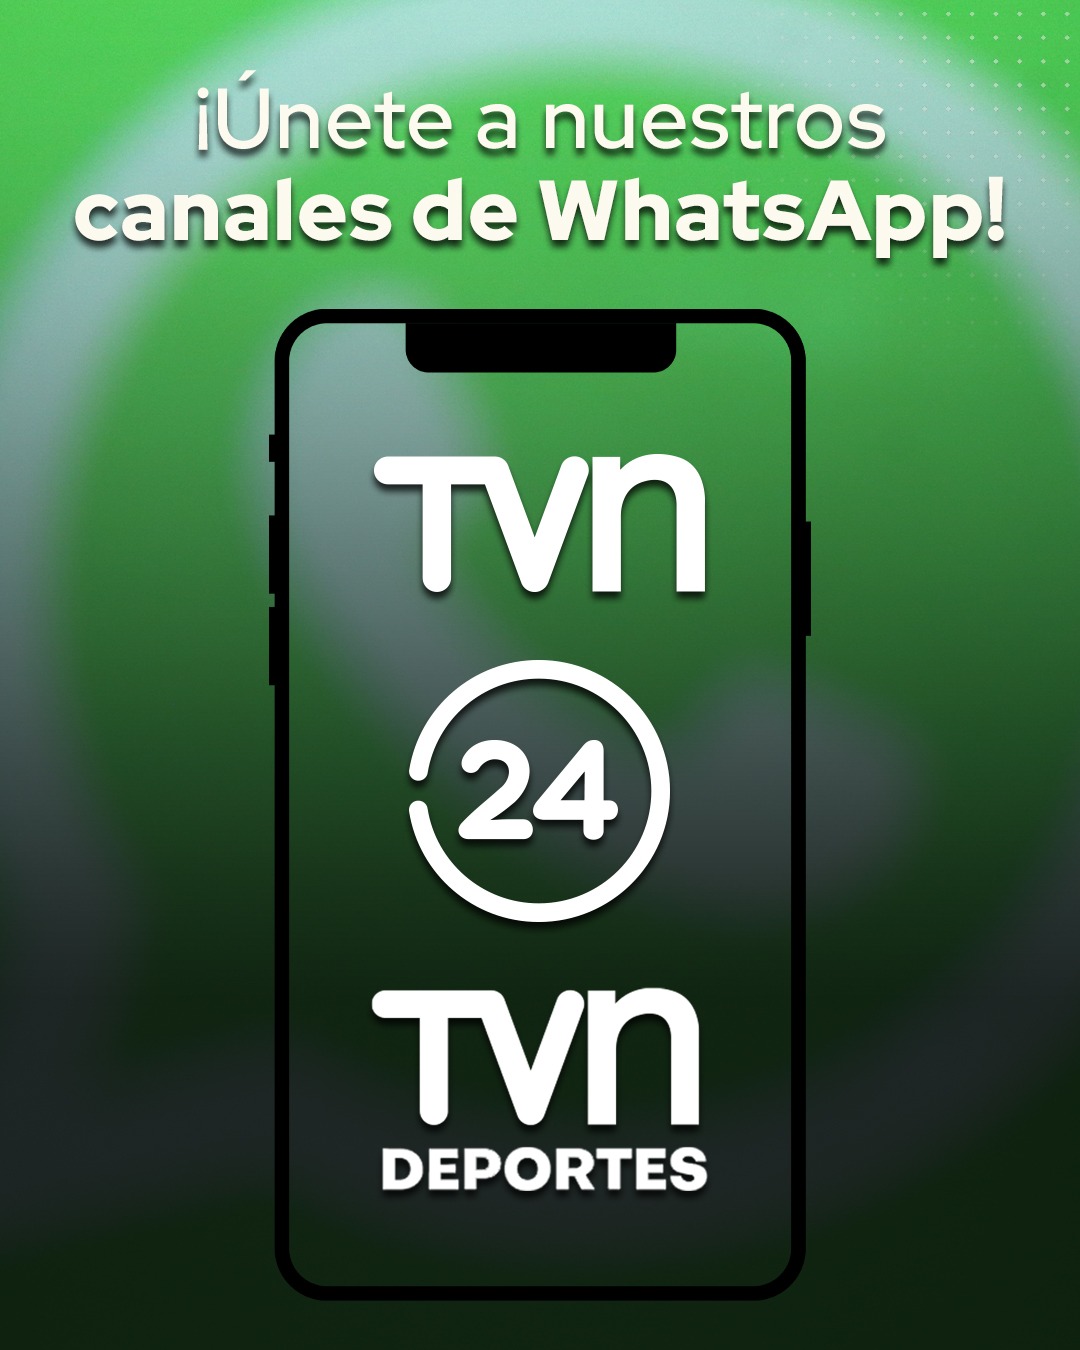 Canales de WhatsApp TVN y 24 Horas.